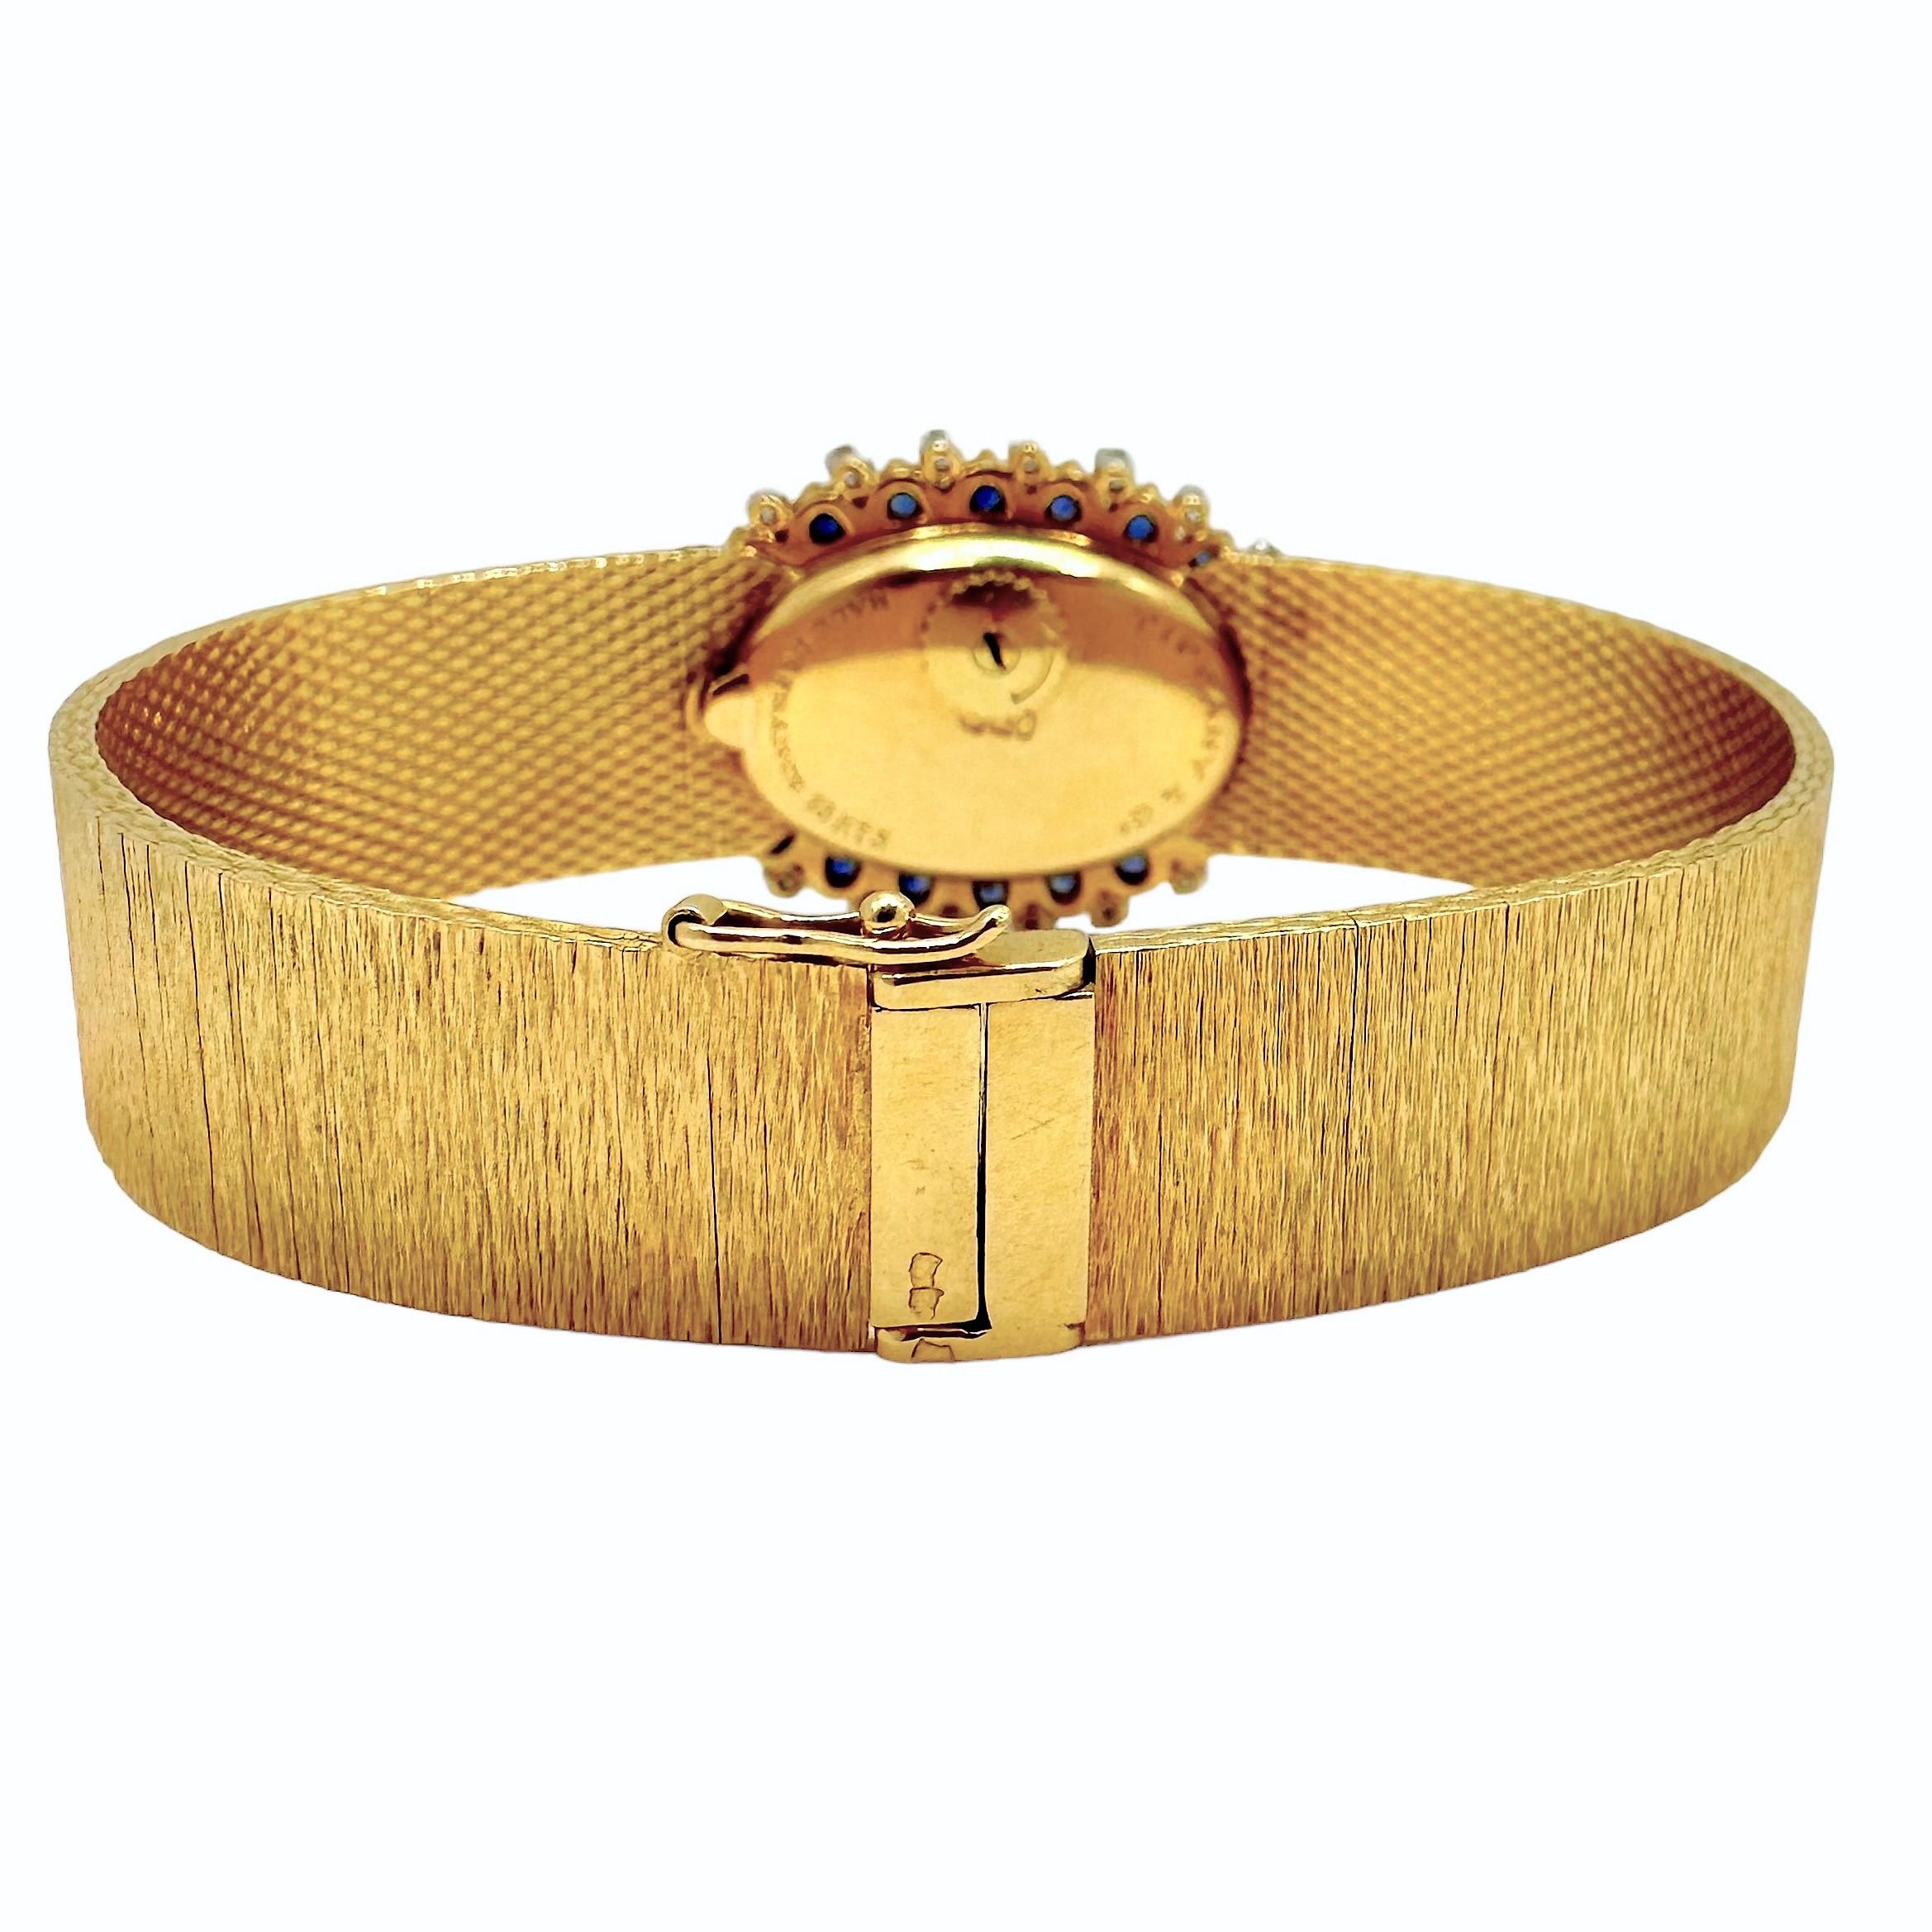 Cette élégante montre-bracelet française de Tiffany, avec mouvement Uti, est fabriquée en or jaune 18 carats et présente une finition à l'écorce sur toute sa surface, y compris sur son cadran ovale, qui est signé Tiffany & Co. France. Le cadran est